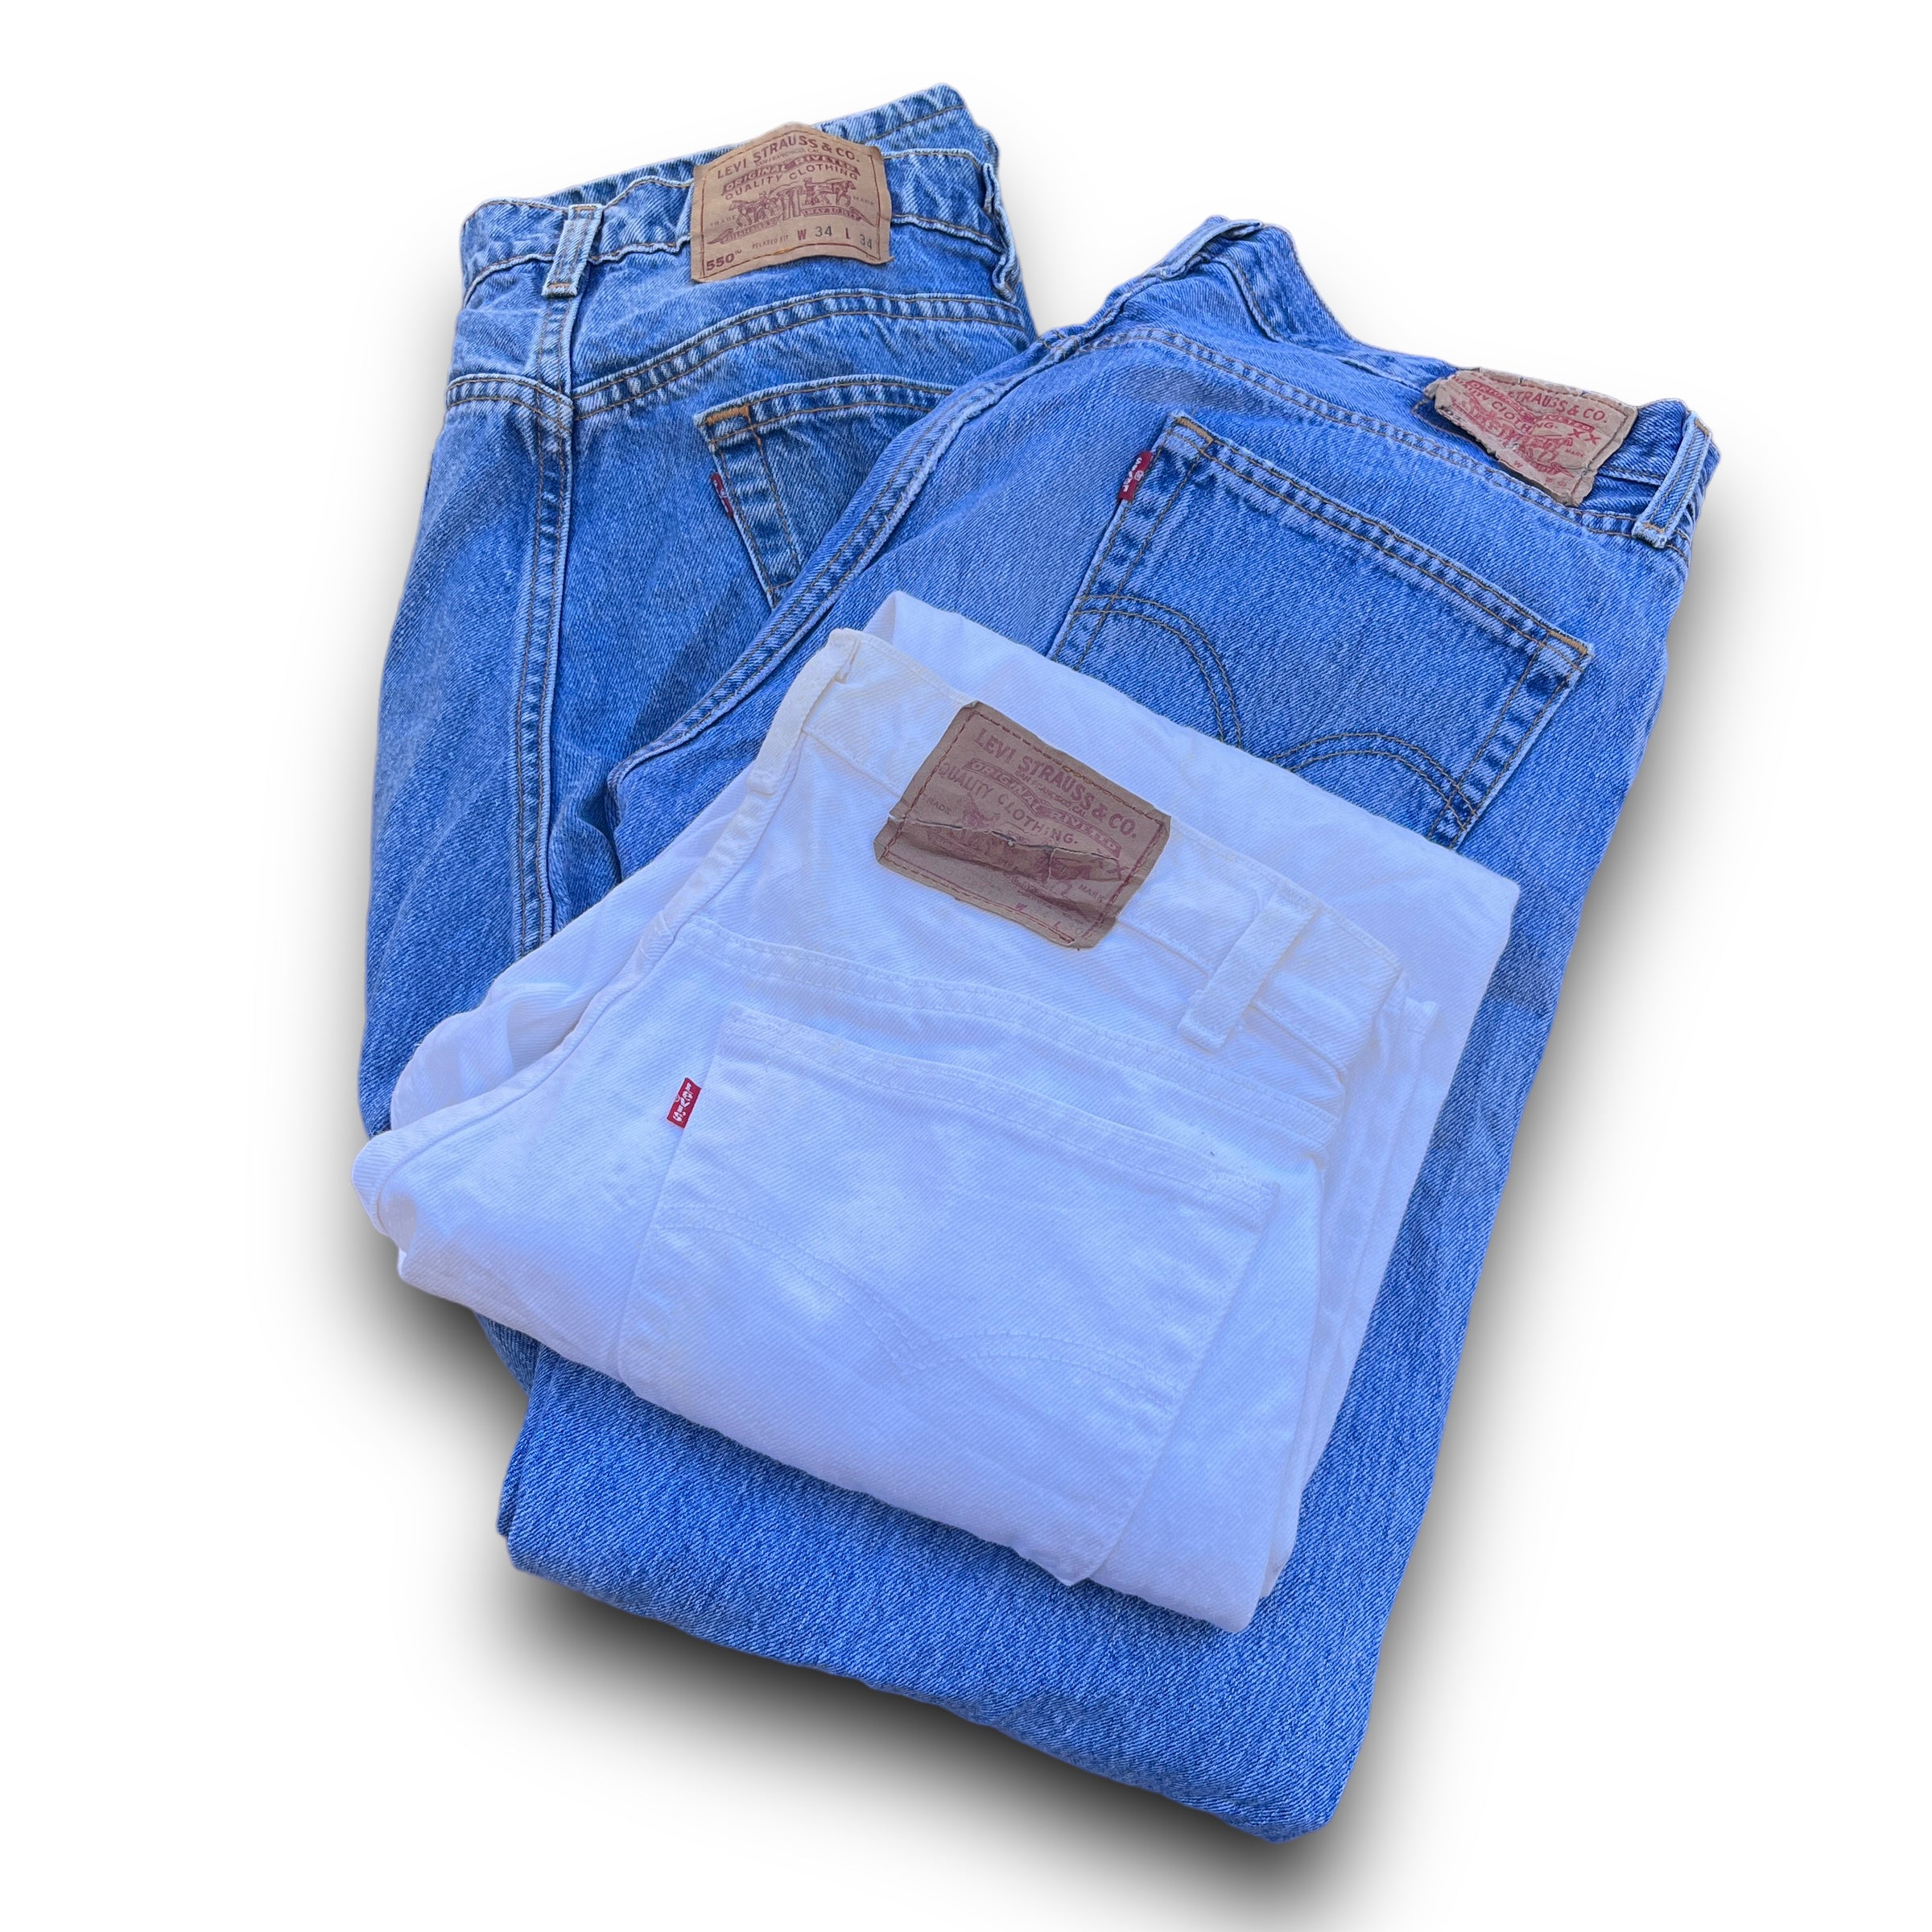 Wholesale Levis Jeans Mix Per Piece 10-50 Pieces